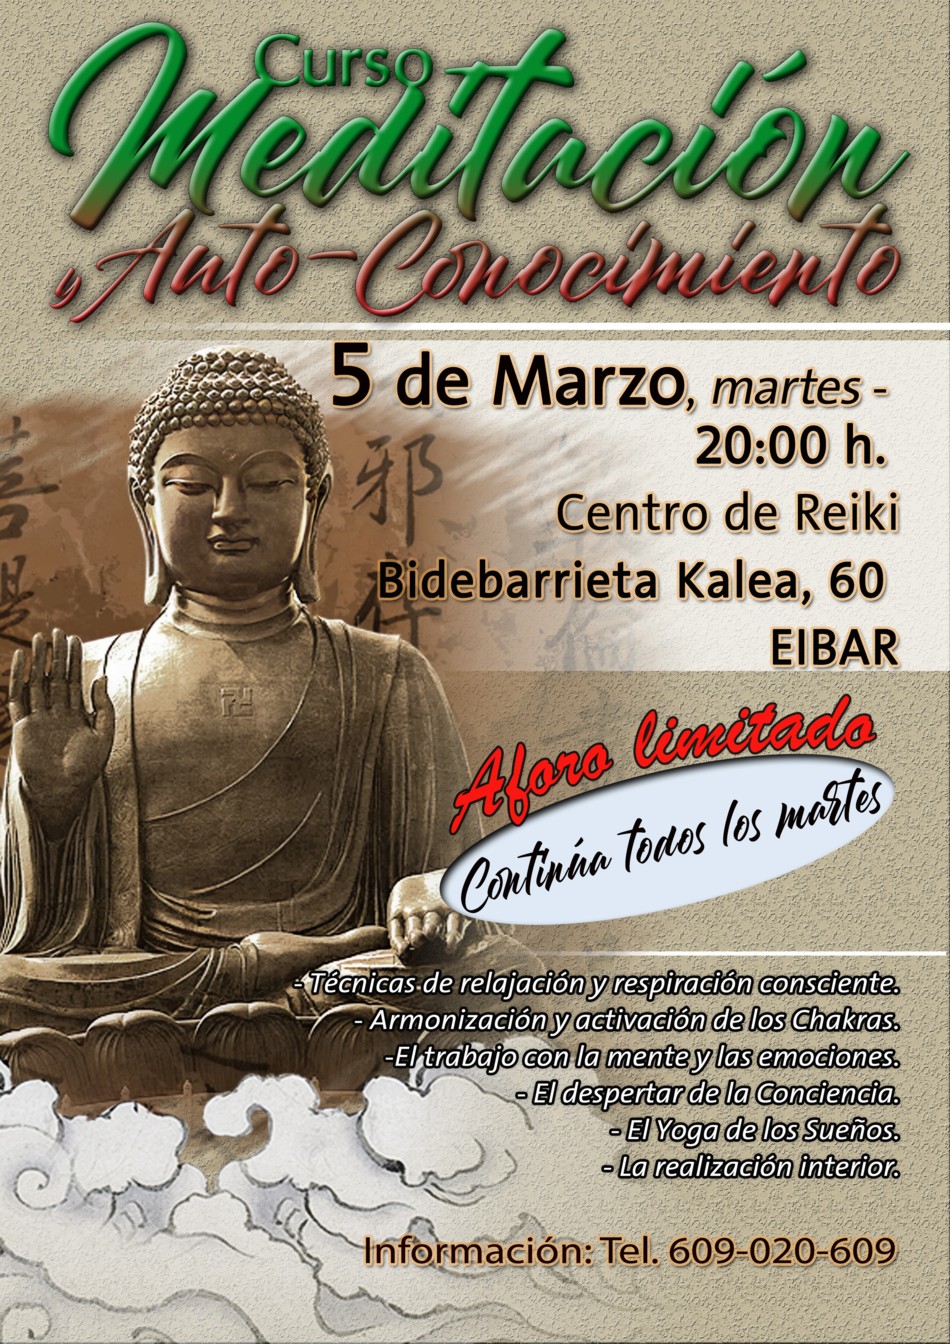 Gnosis y meditación en Eibar y Elgoibar en Guipuzcoa: Relajación, concentración y meditación, las claves para el despertar de la conciencia